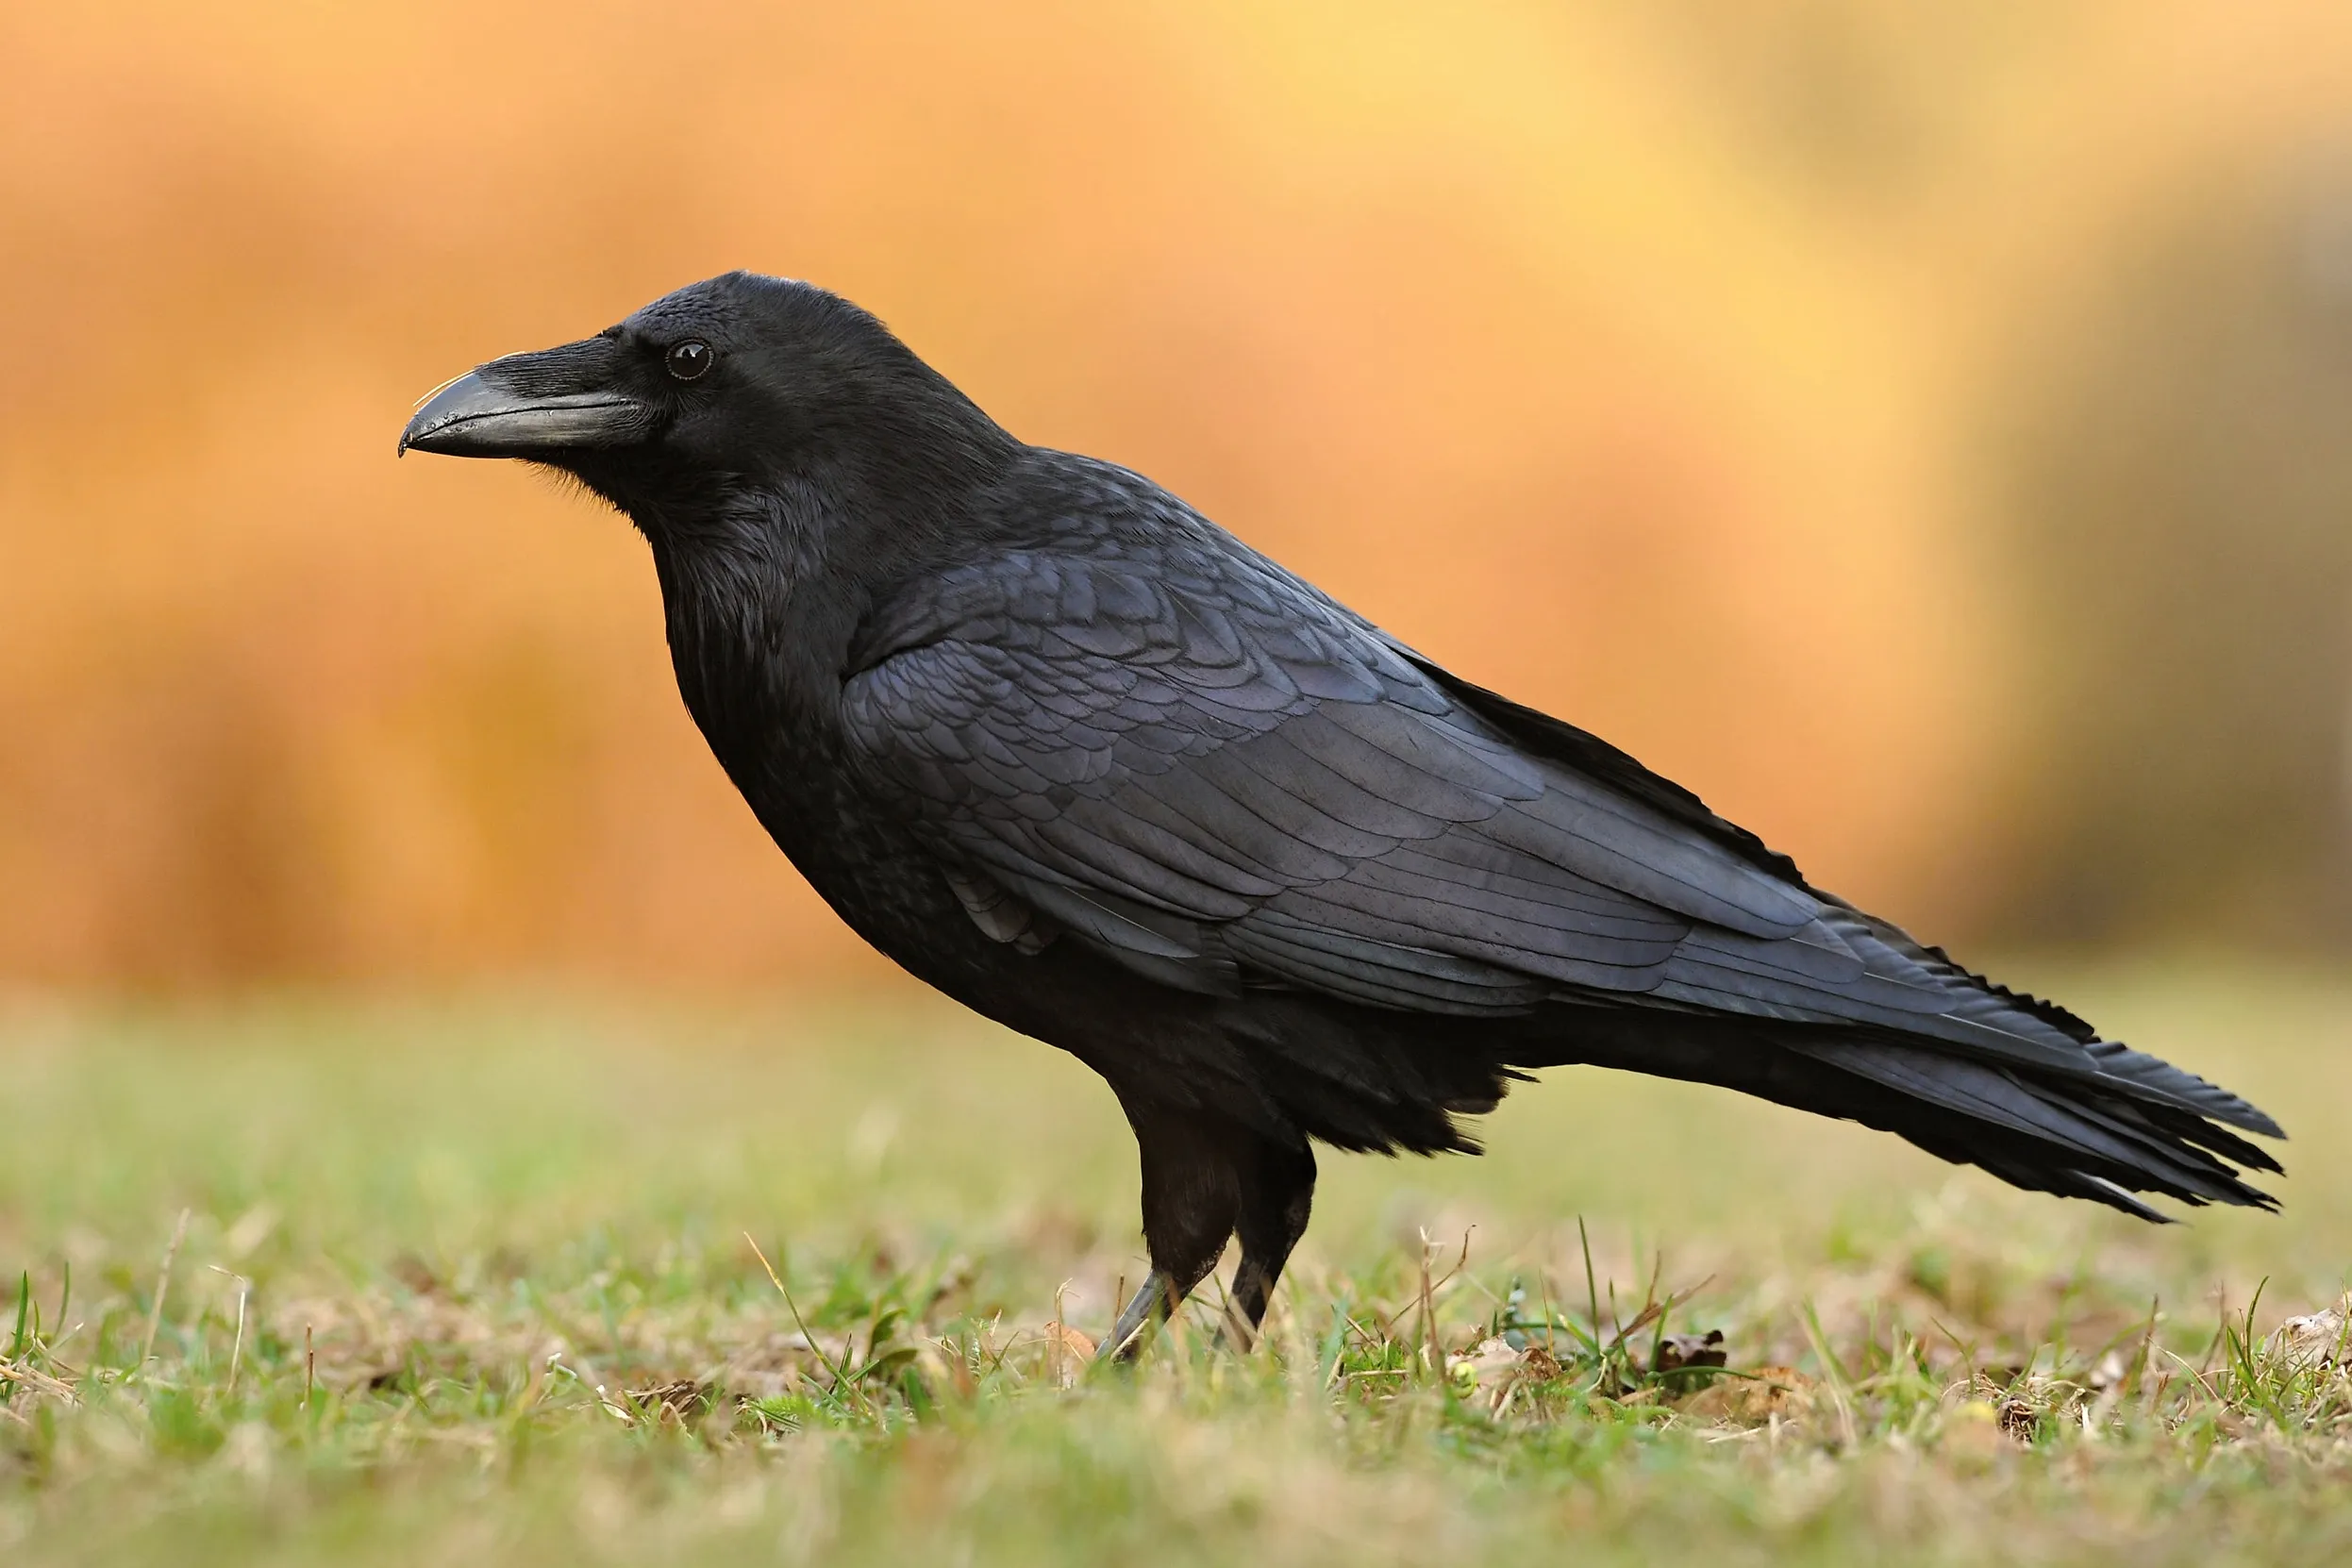 A lone Raven stood on grassland.